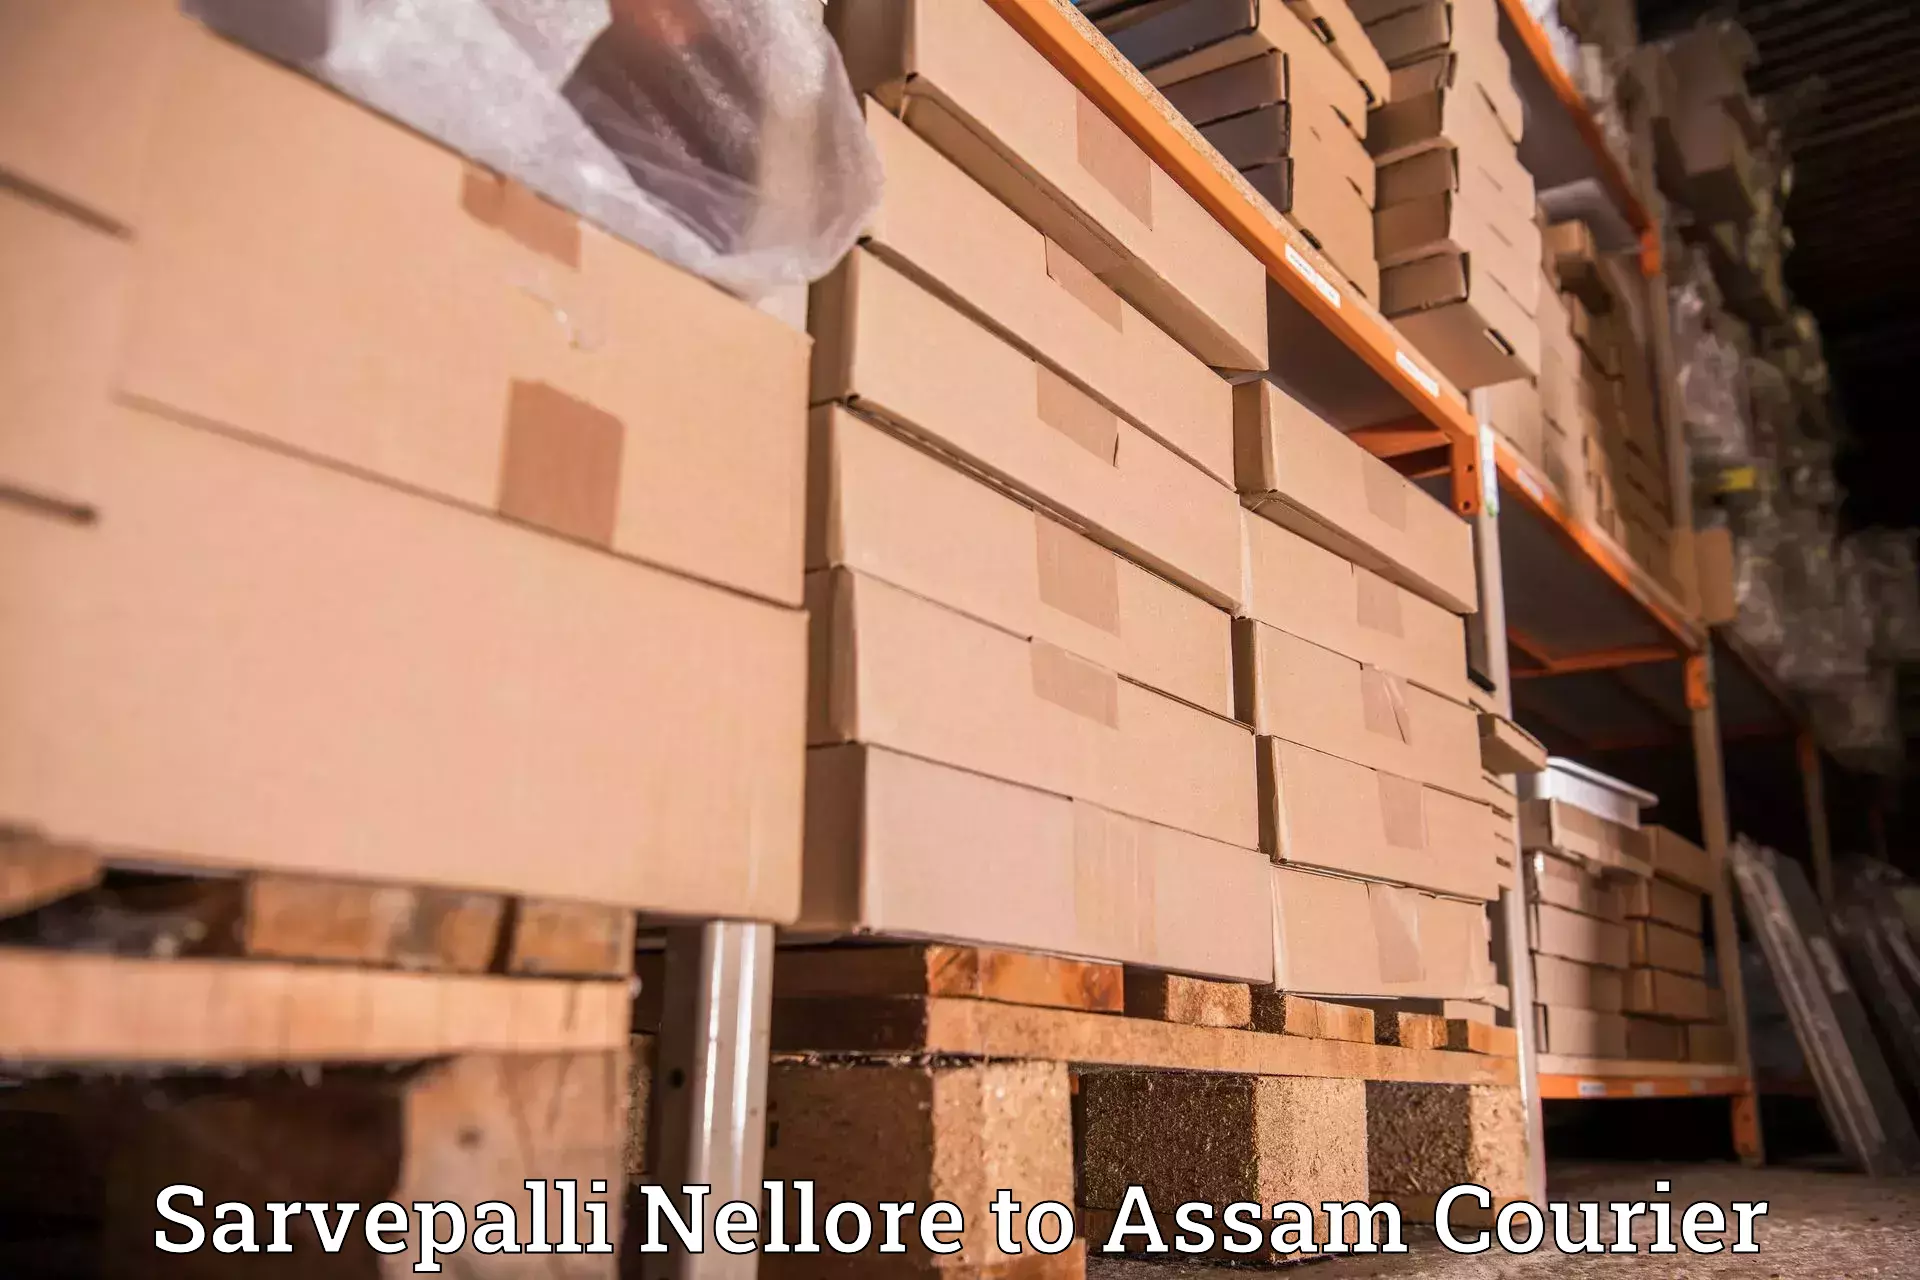 Residential courier service Sarvepalli Nellore to Mangaldoi